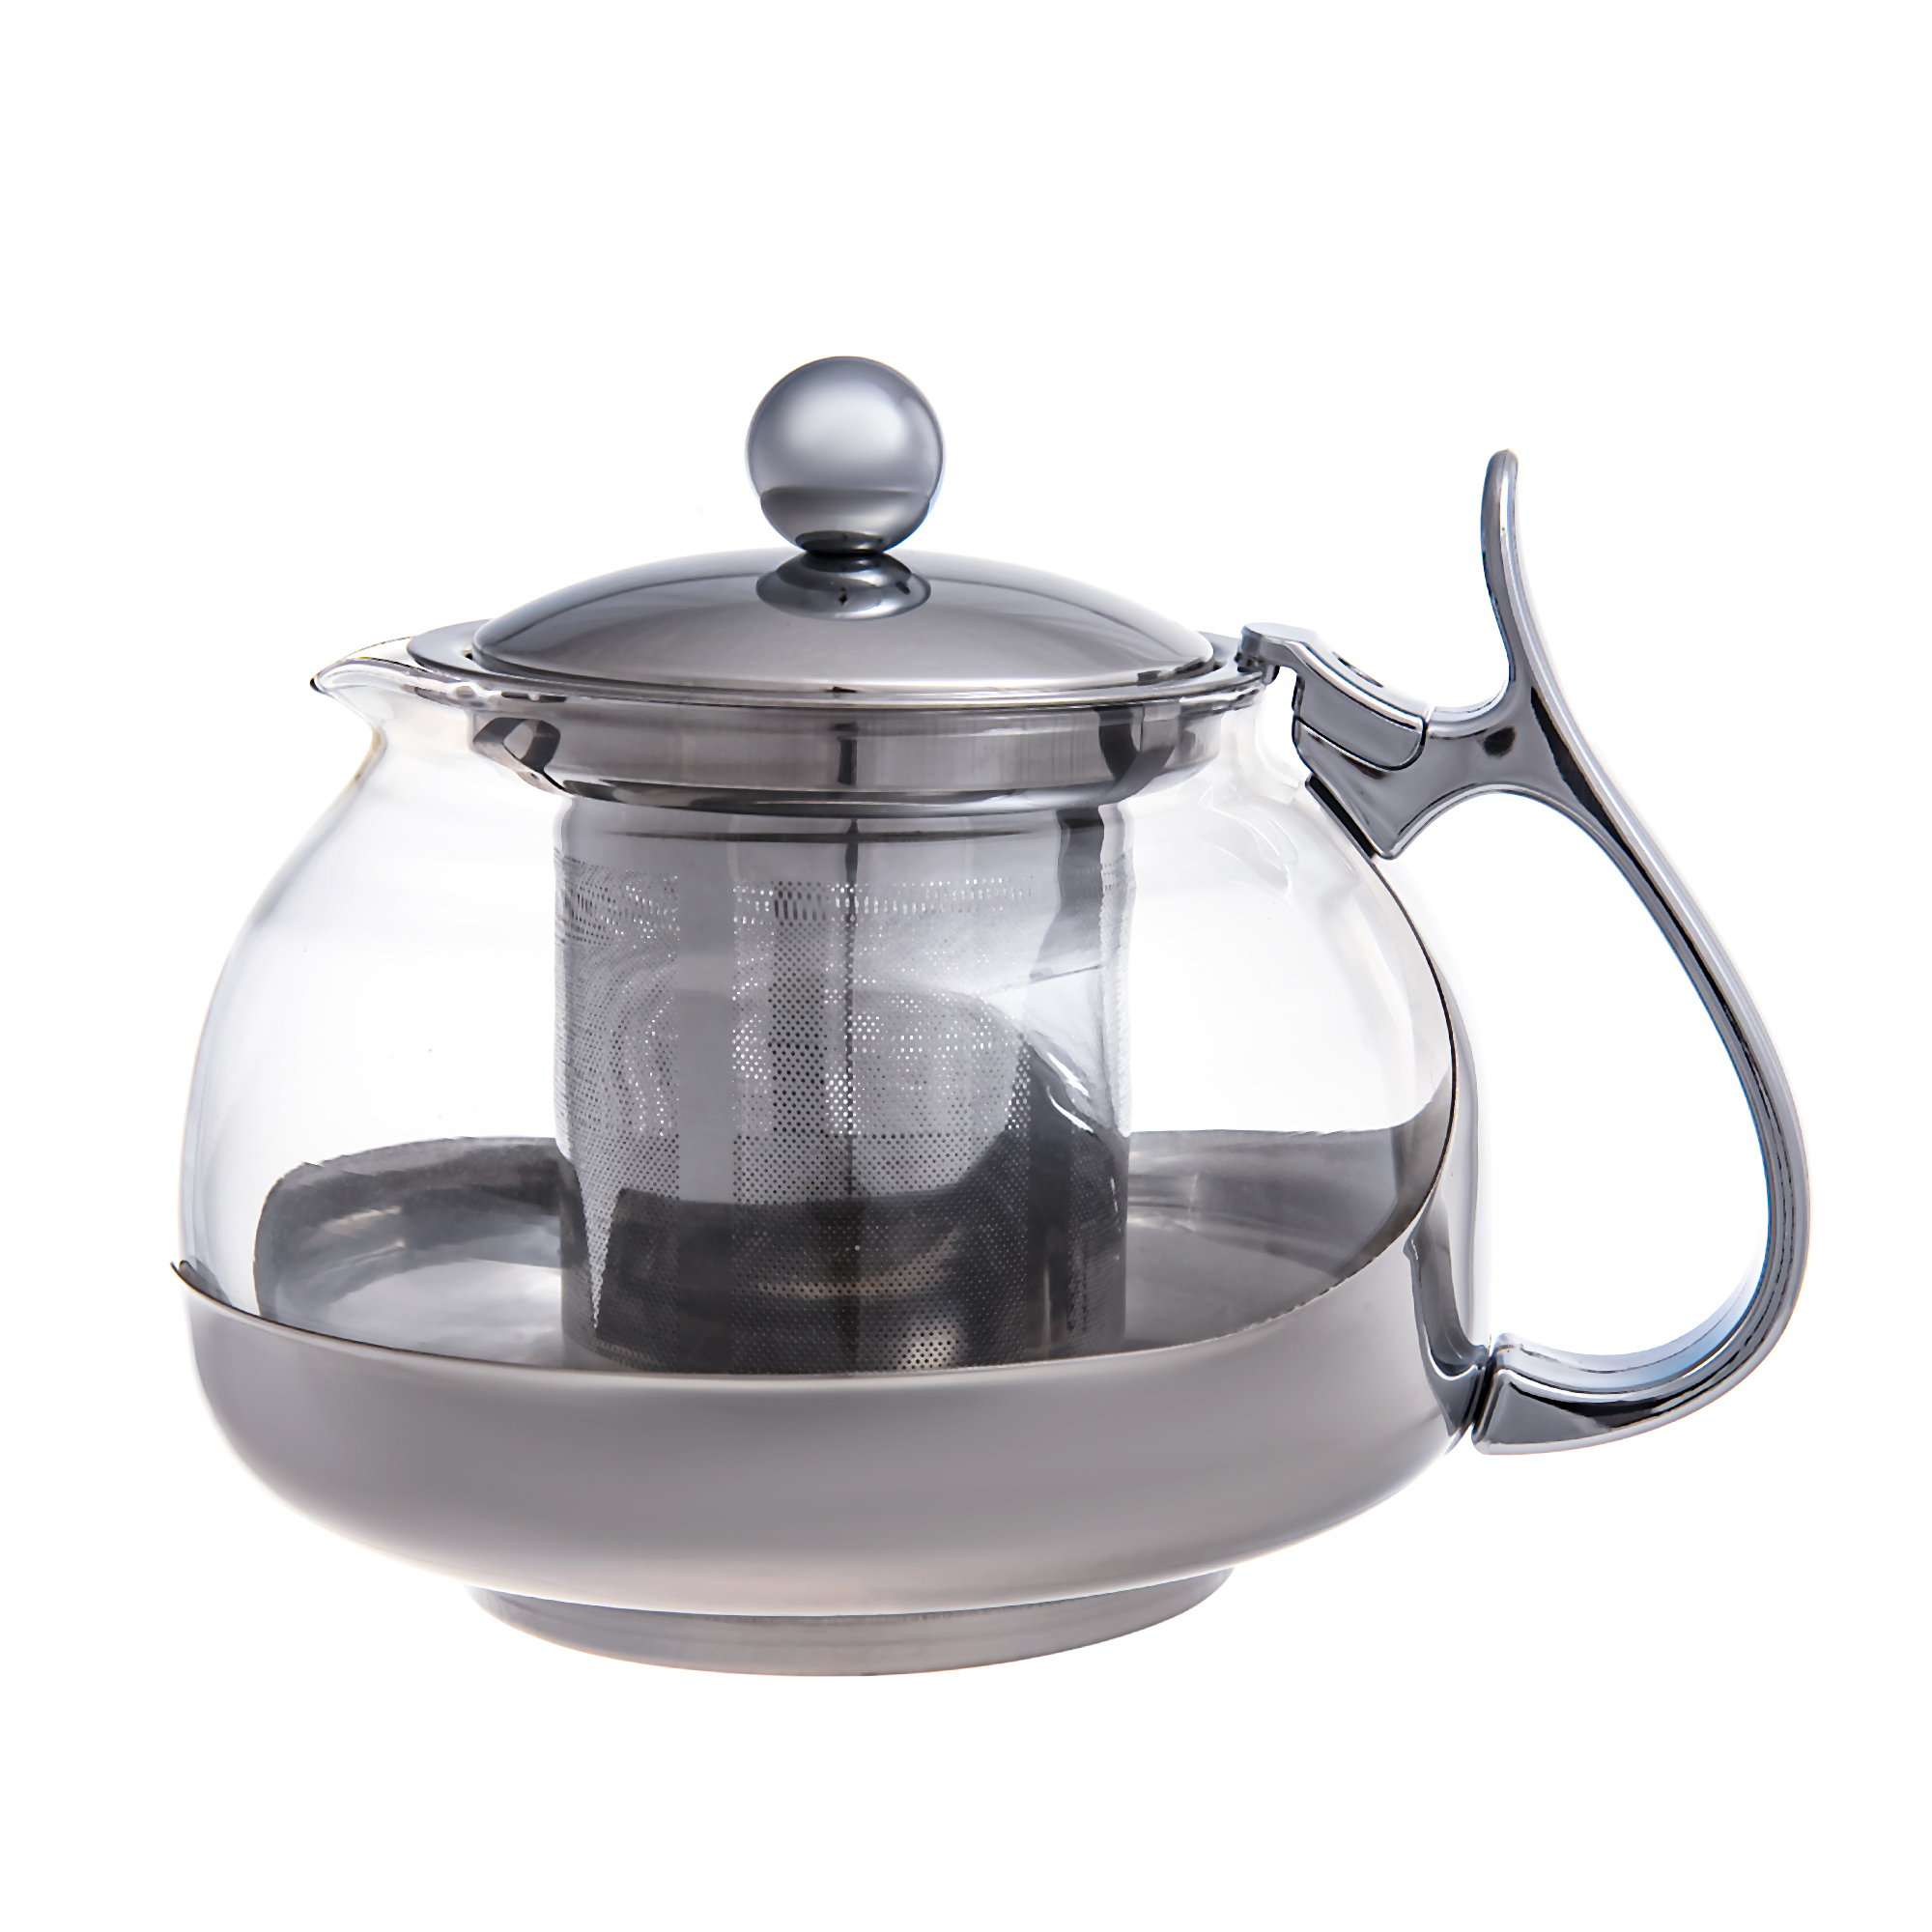 Чайник заварочный 0.7 л с фильтром Hans&gretchen чайник заварочный profi cook pc tk 1165 1100 вт серебристый прозрачный 0 5 л стекло